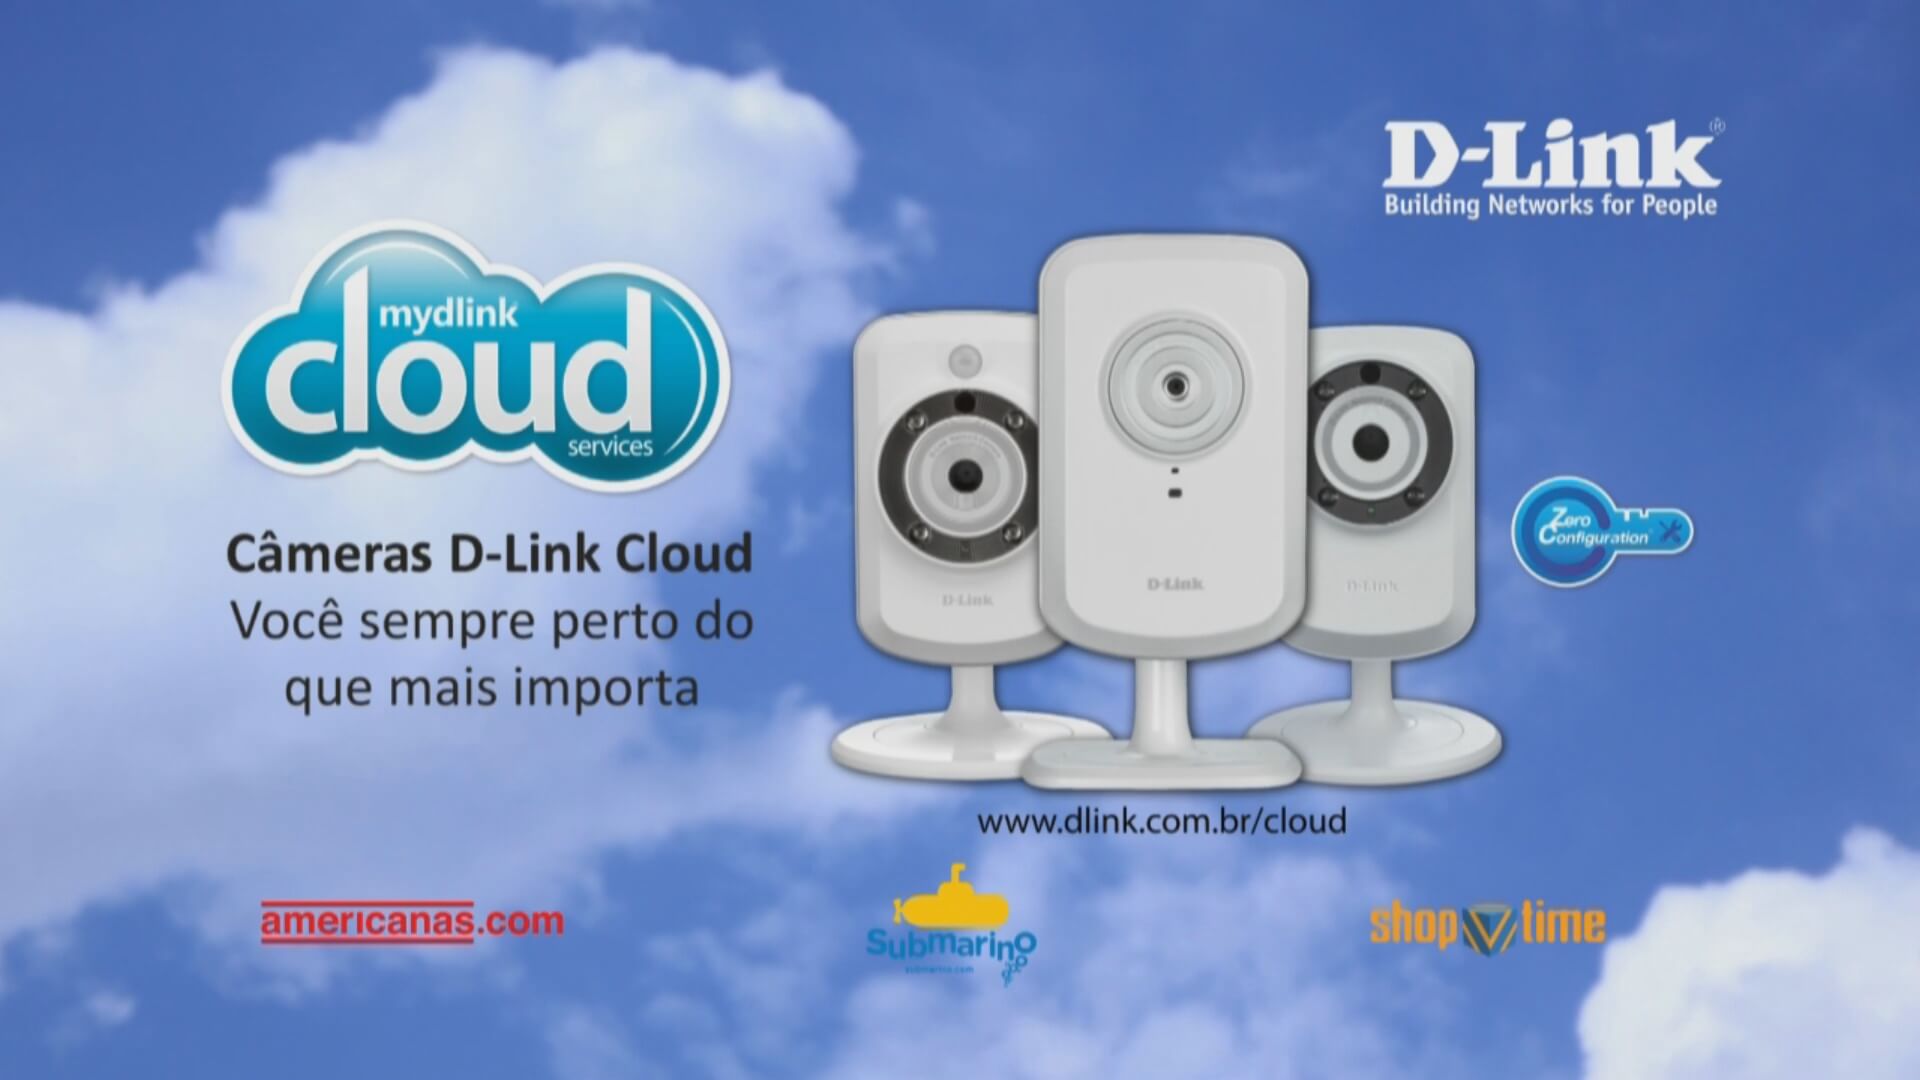 DLink Cloud